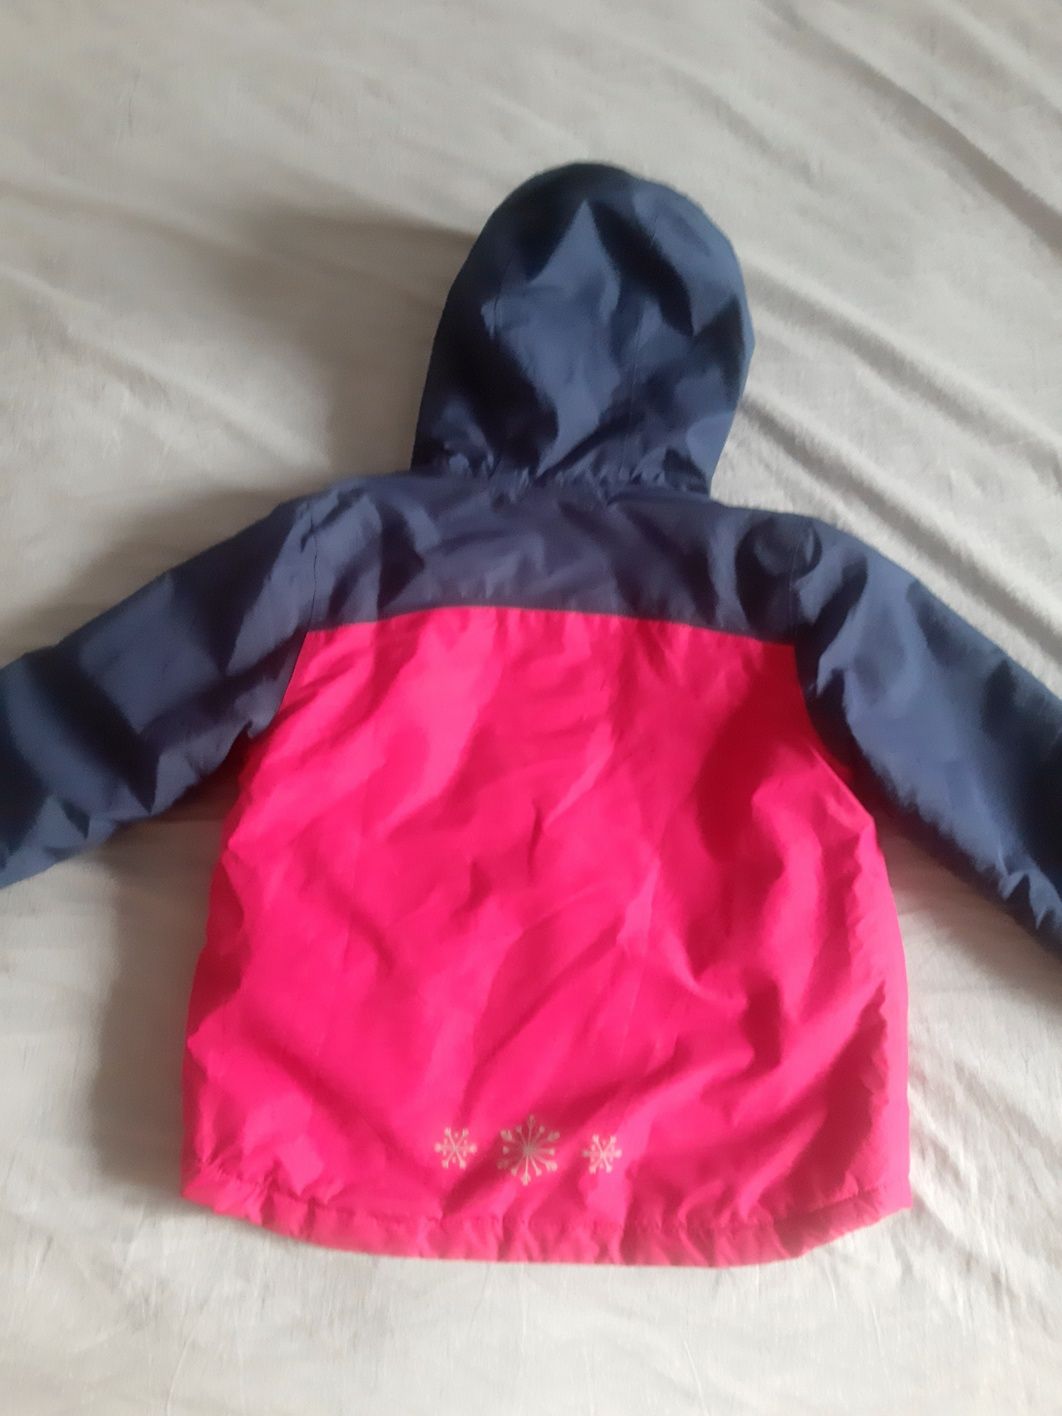 Куртка для дівчинки 116